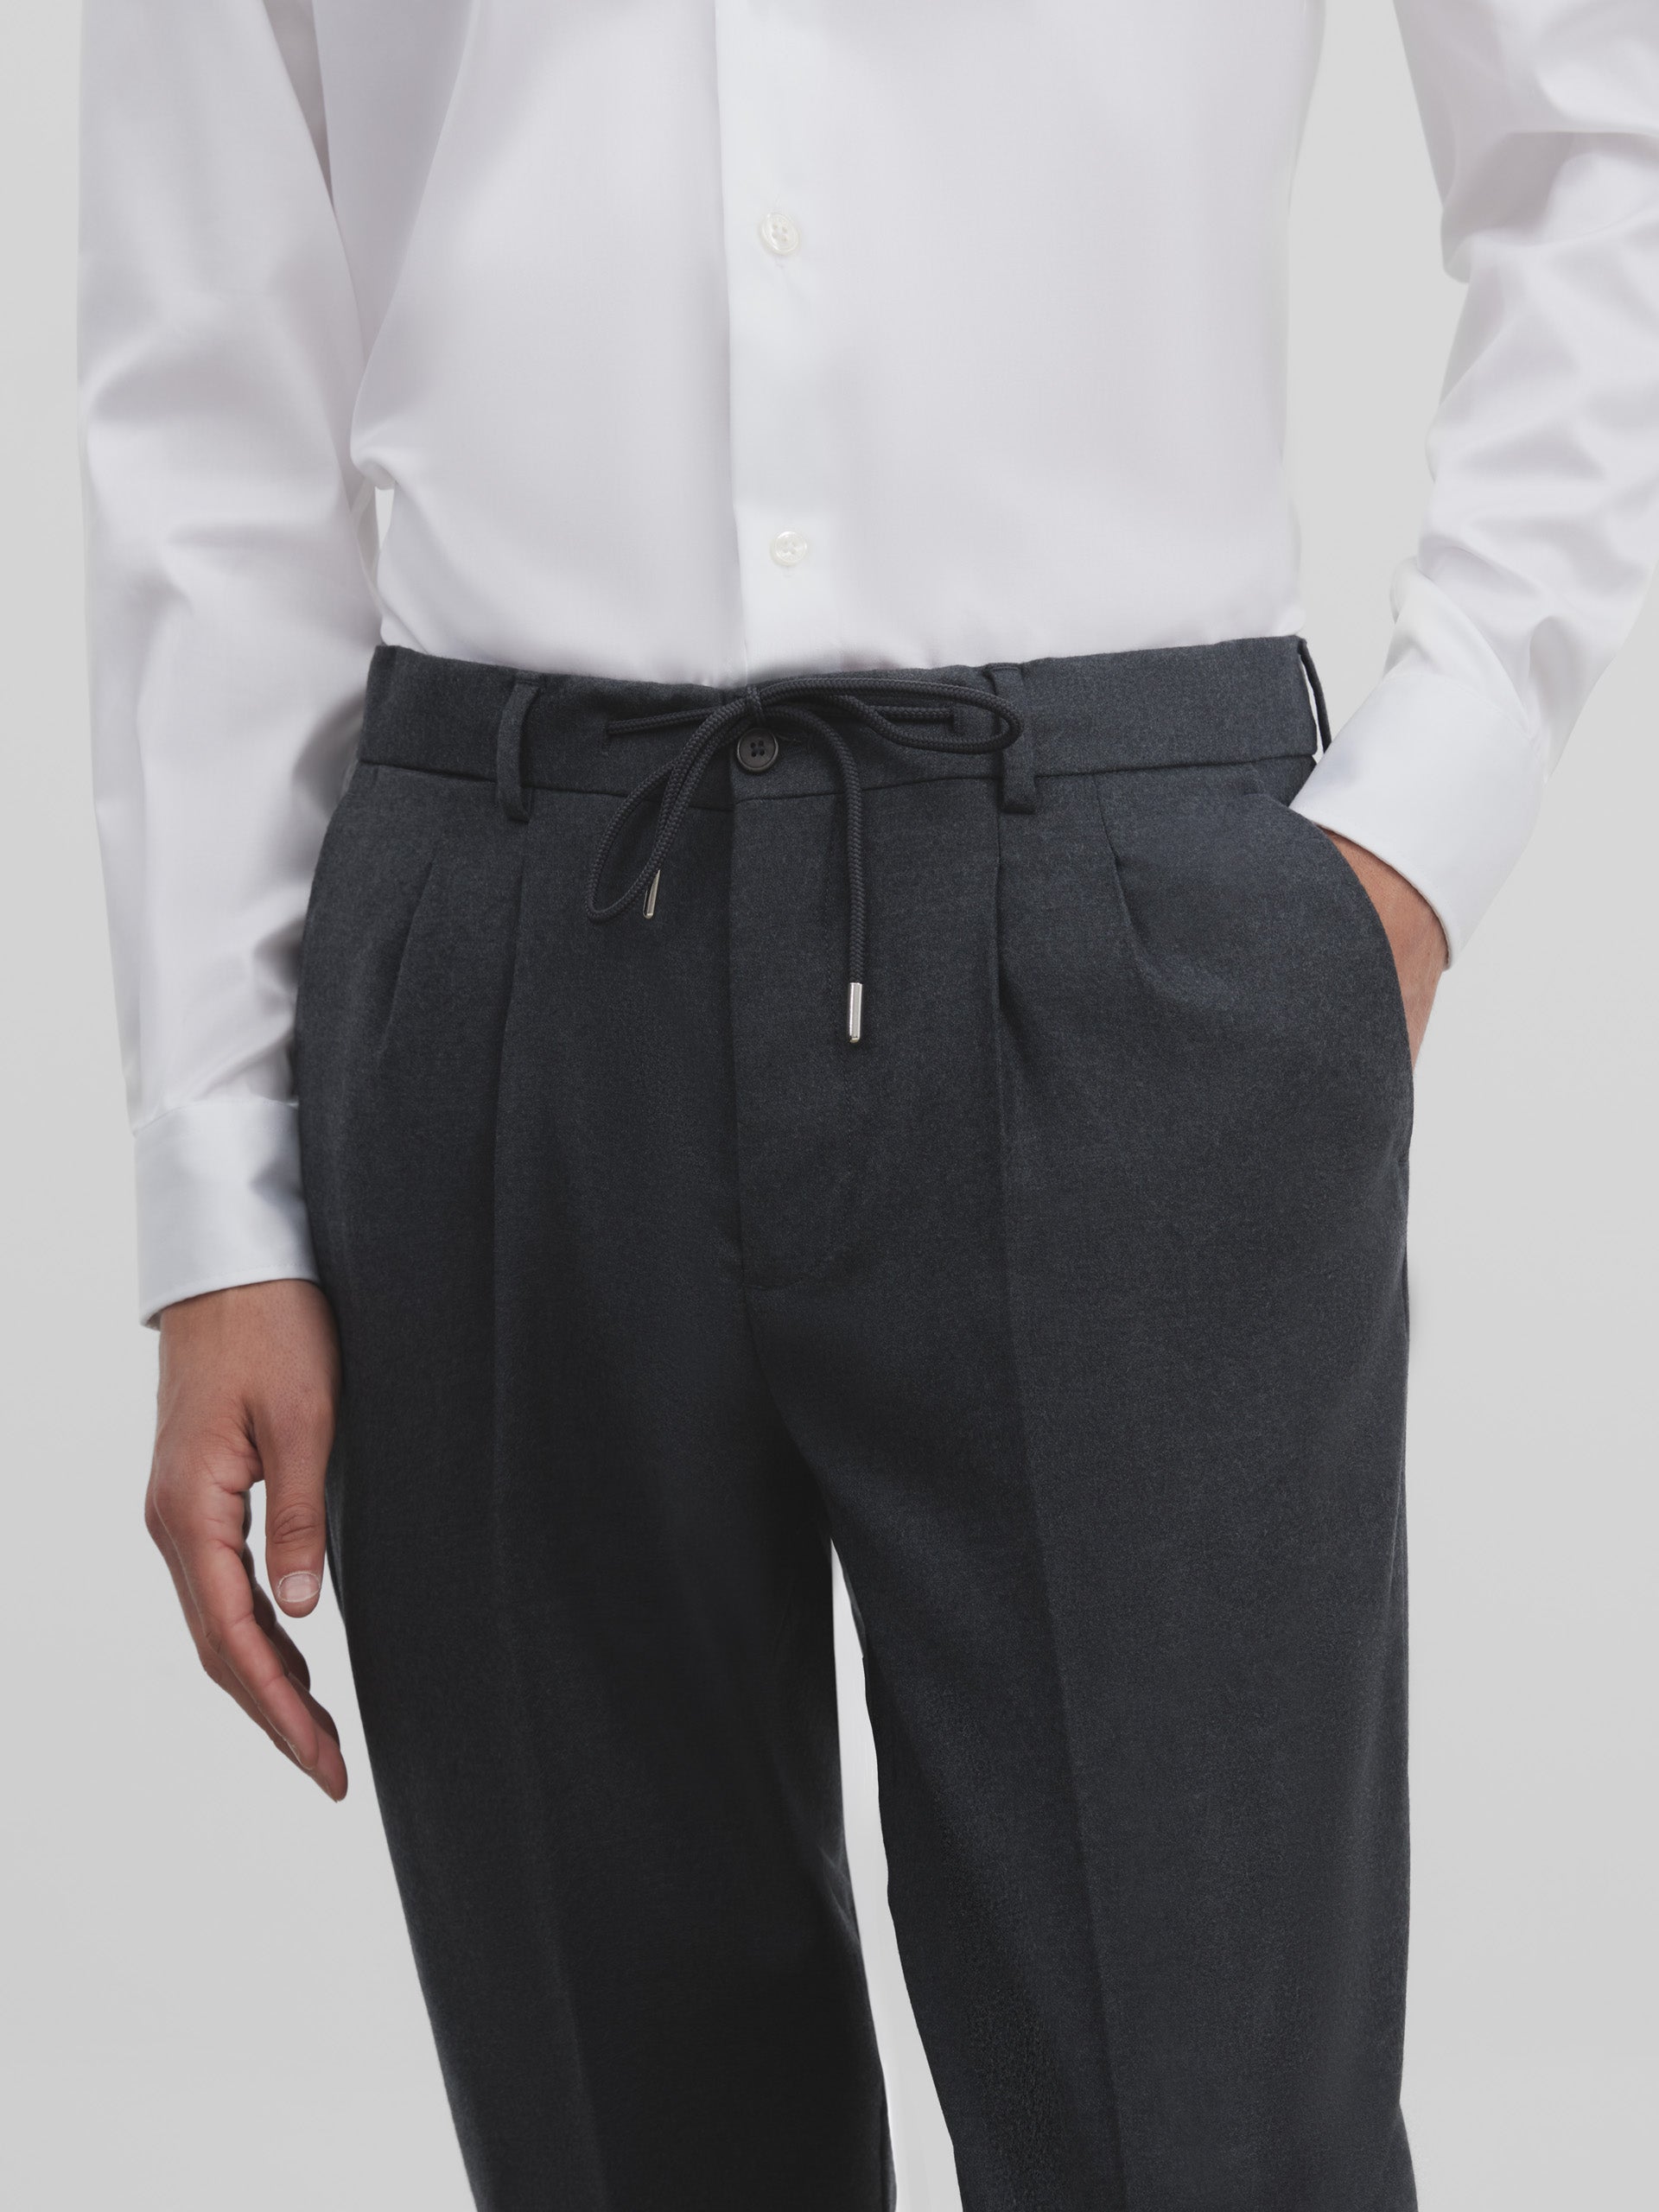 Pantalon vestir unique traveler gris